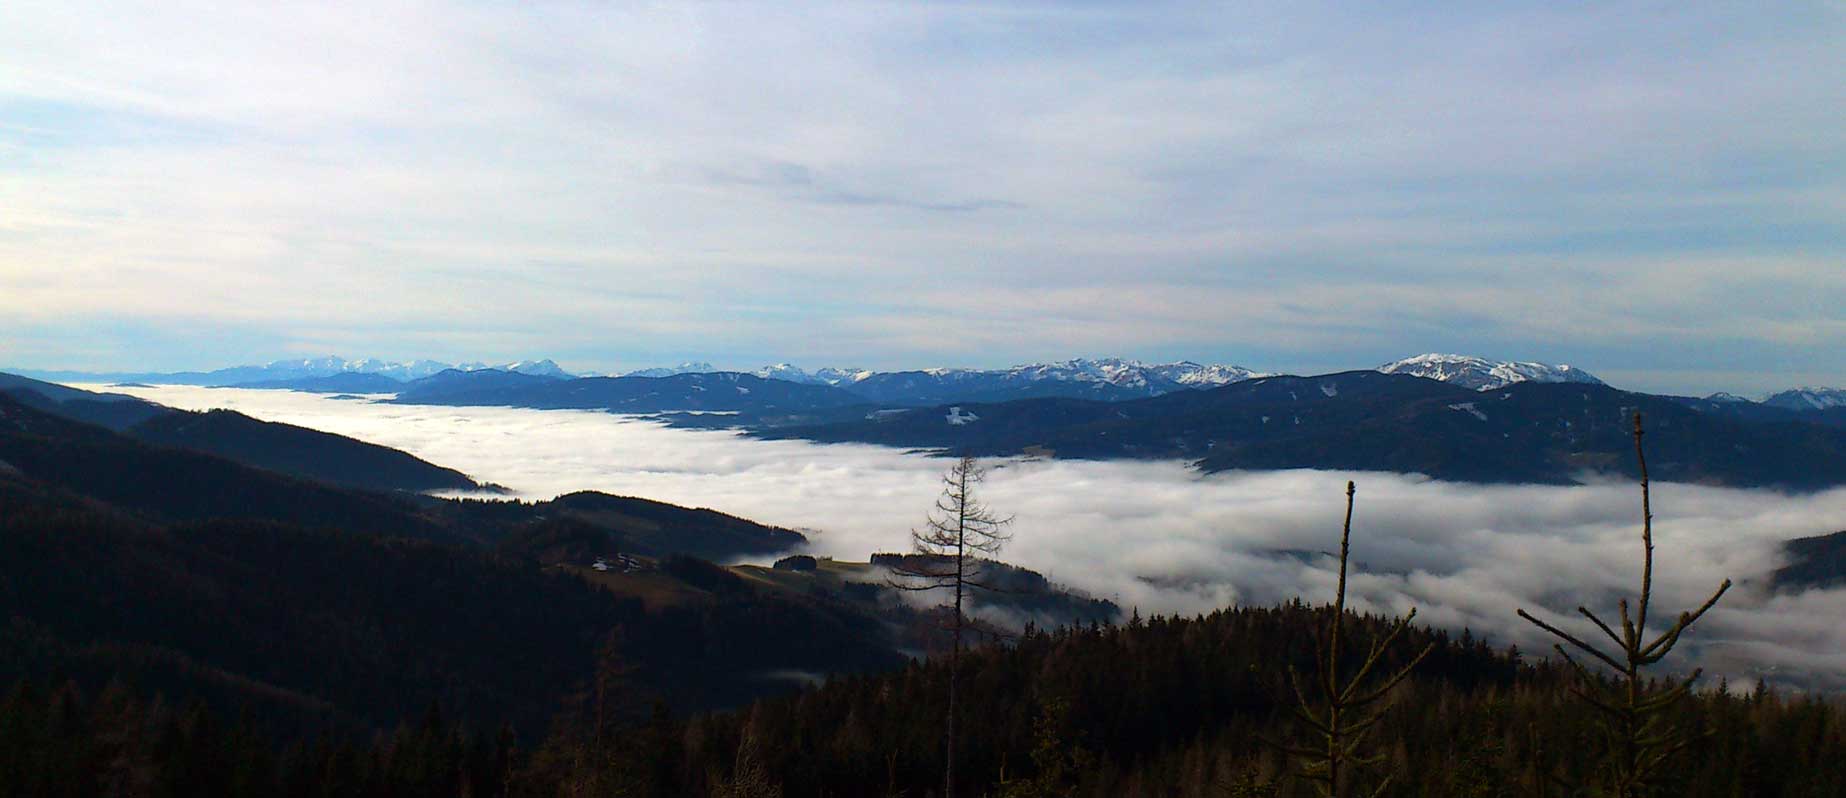 Freizeit rund um das Berggasthaus Friedrichhütte am Stuhleck - Foto zeigt Panoramaaufnahme mit dem vernebelten Mürztal und den Alpengipfeln von z.B. Hochschwab, Veitsch und Rax im Hintergrund